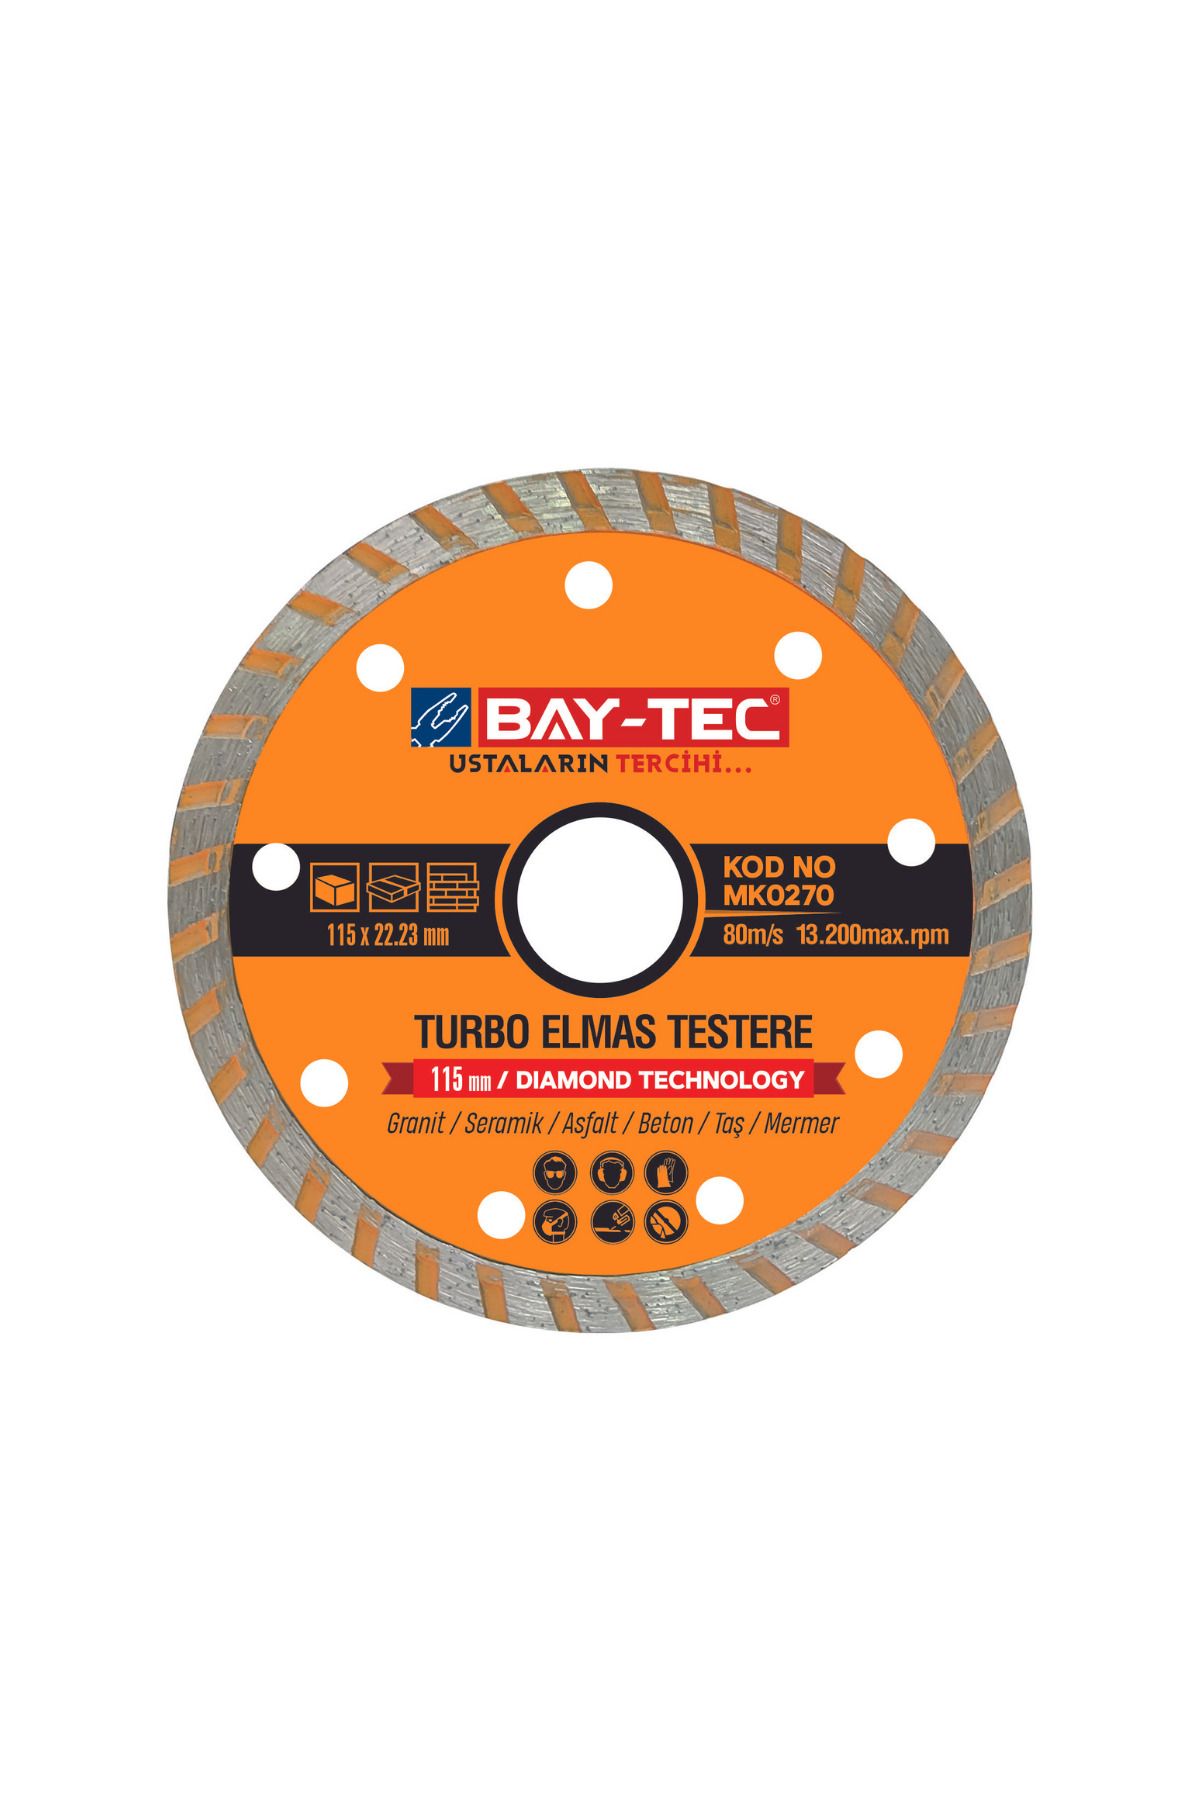 Baytec Bay-tec Turbo Elmas Testere 115mm